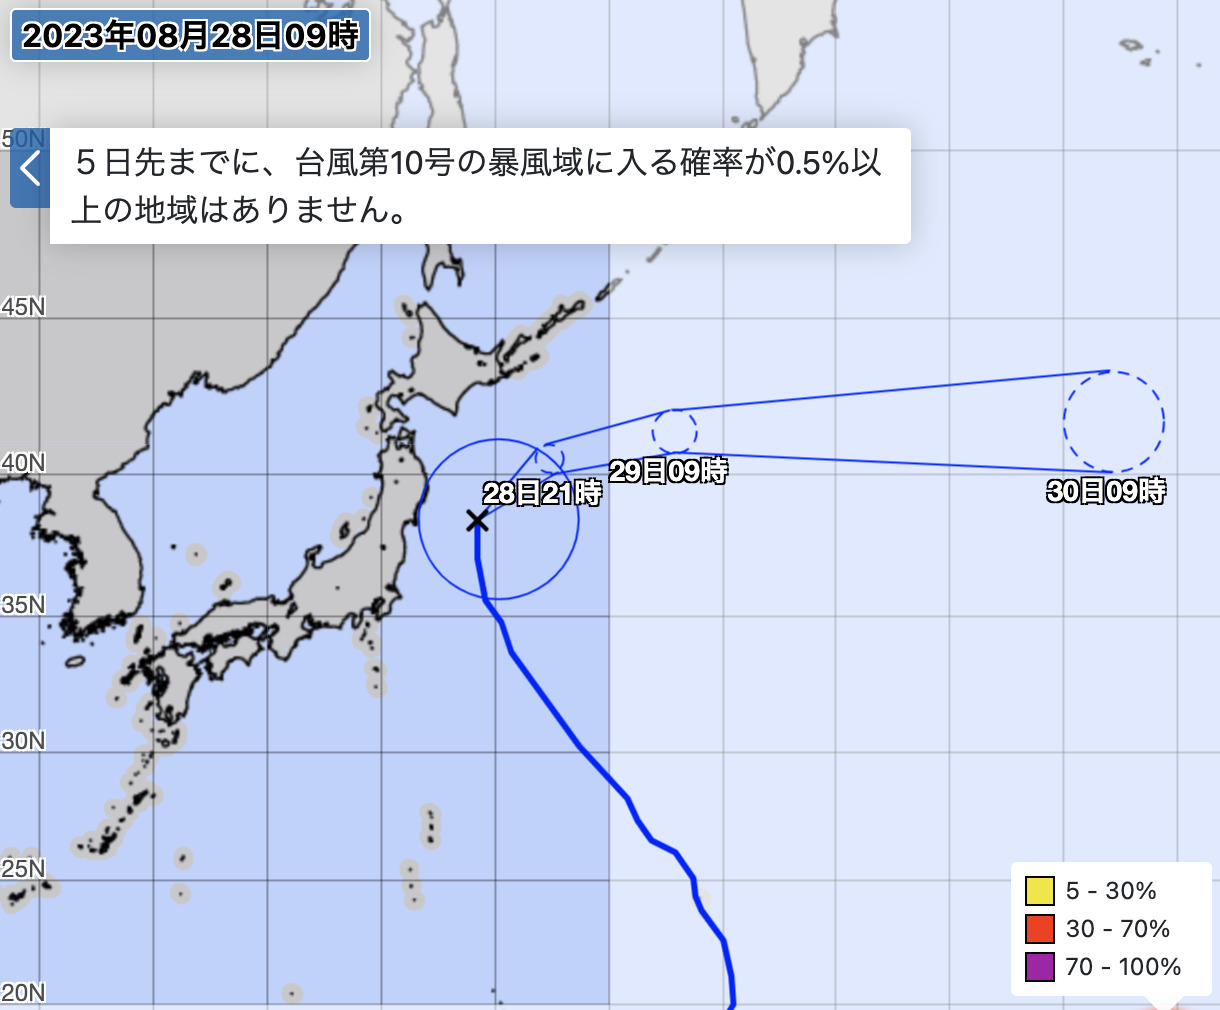 気象庁による台風11号の暴風域に入る確率図